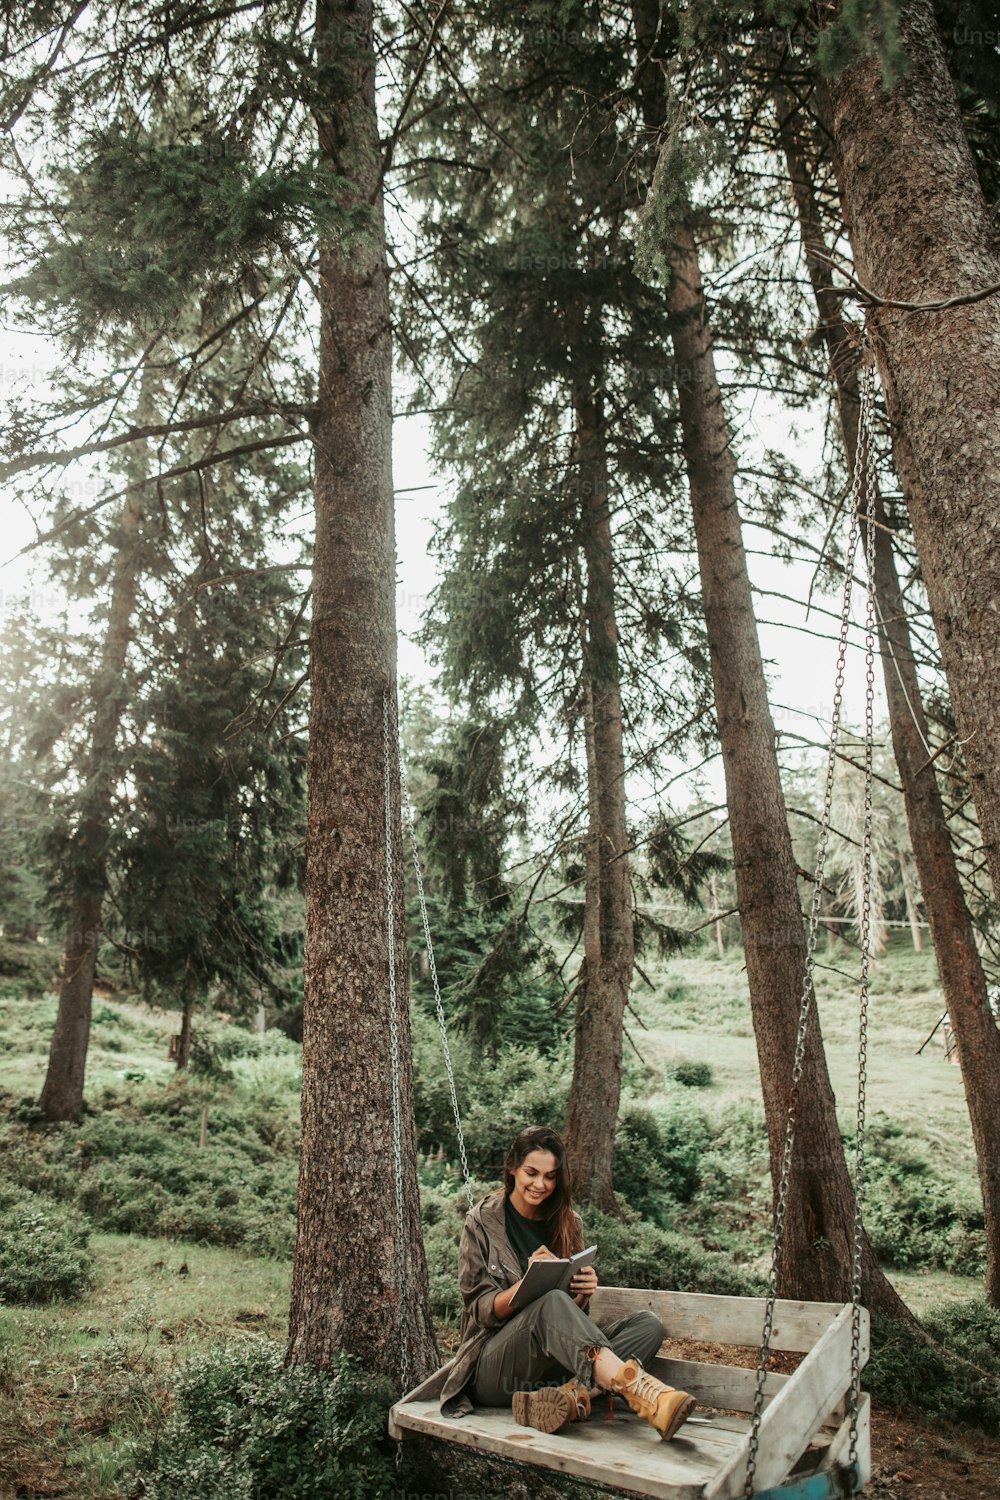 Avoir l’inspiration dans les bois. Portrait de charmante jeune femme écrivant dans un carnet et souriant. Elle se repose dans la forêt entourée de grands arbres